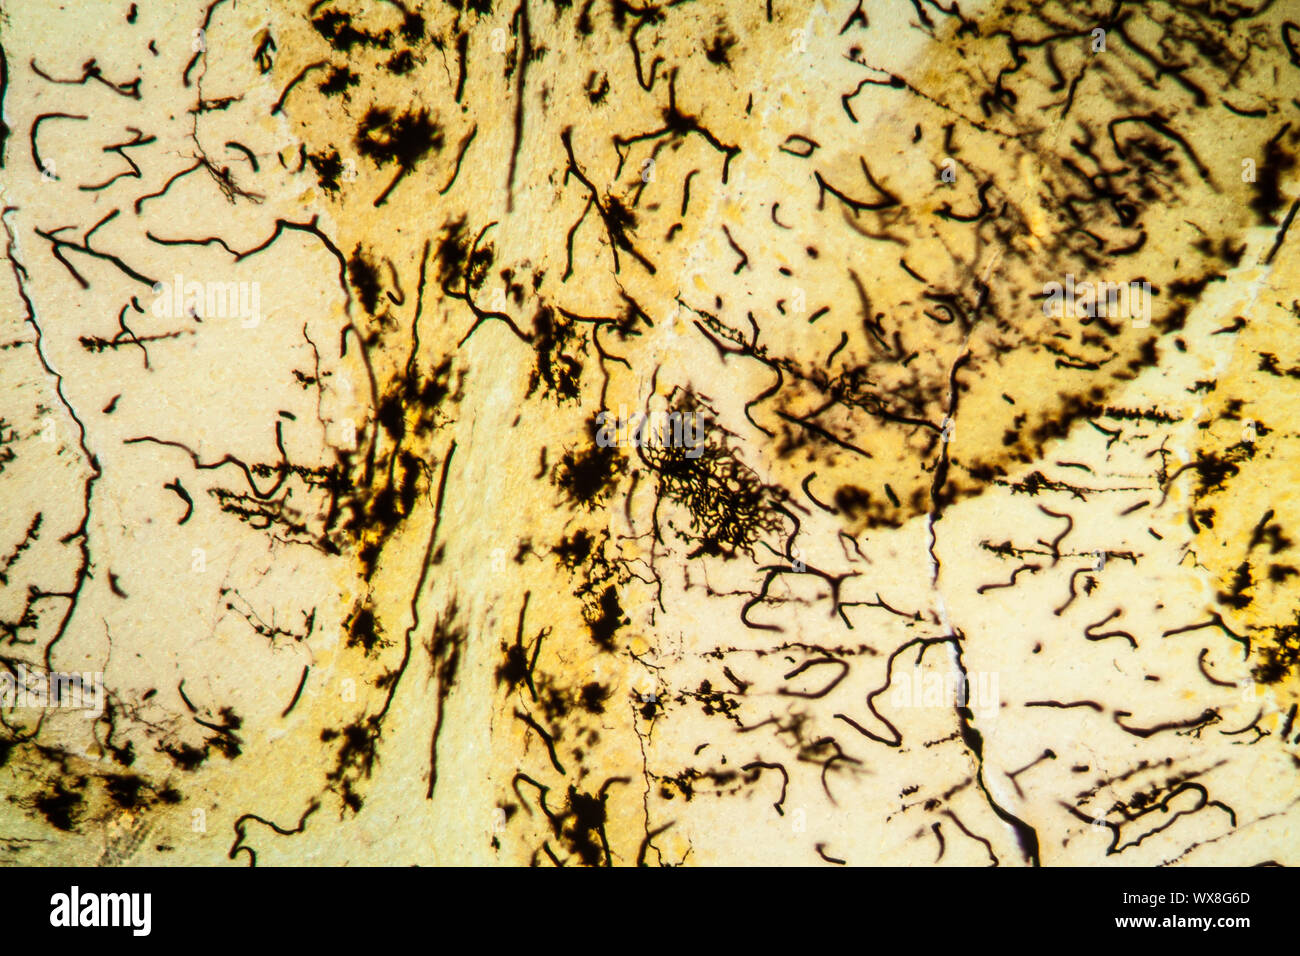 Cat cerebellar tissue under the microscope 100x Stock Photo